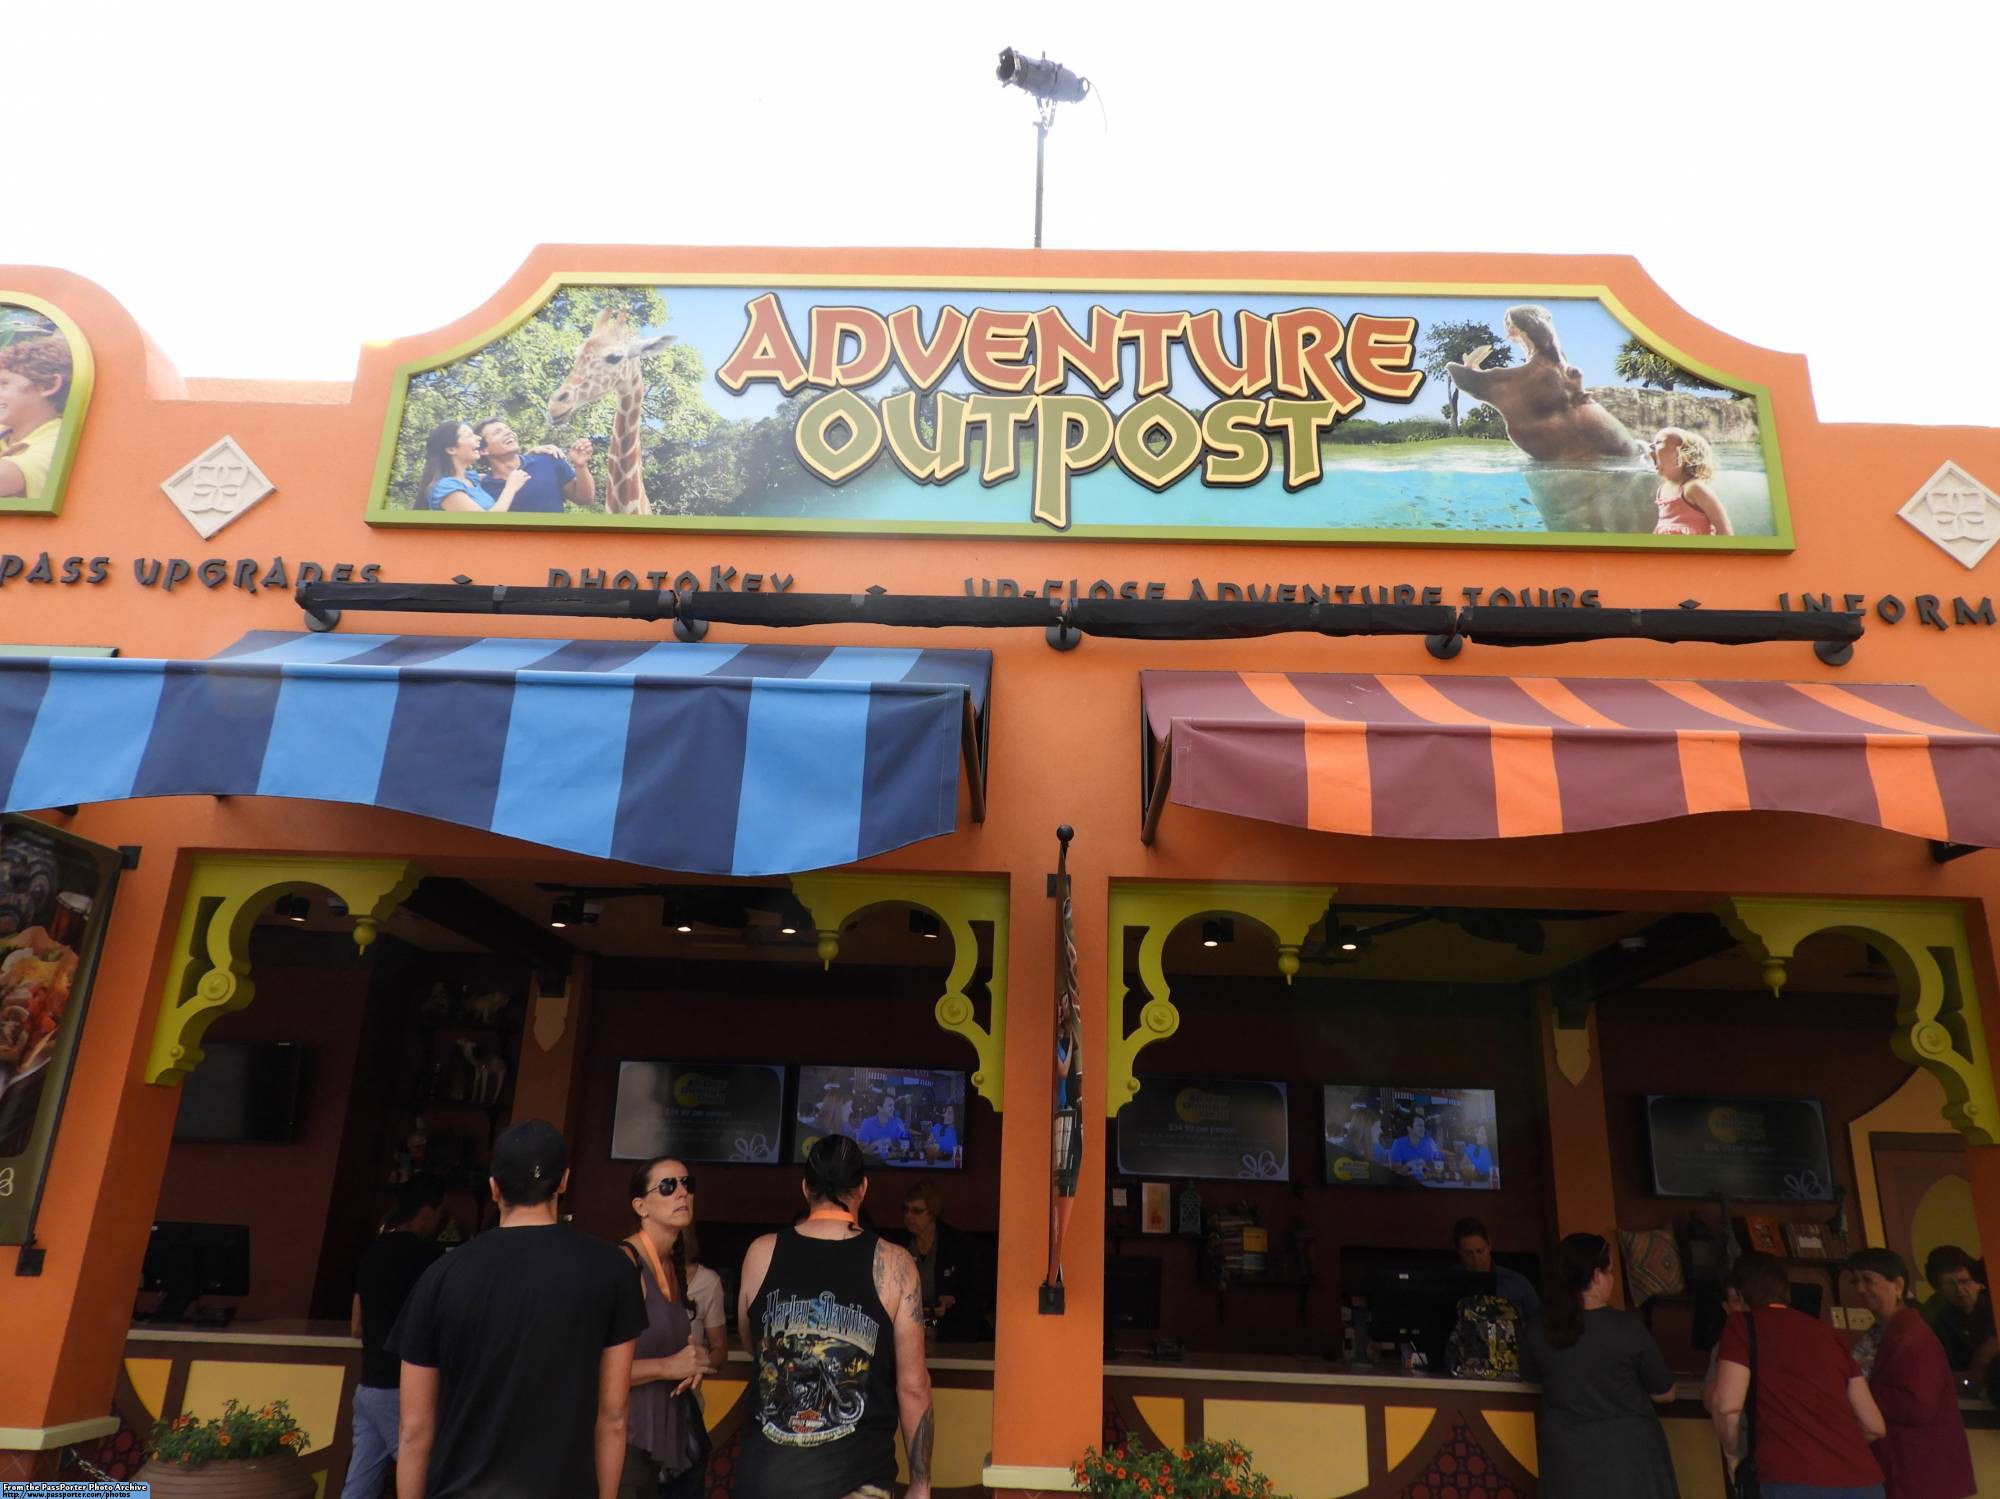 Busch Gardens - Adventure Outpost